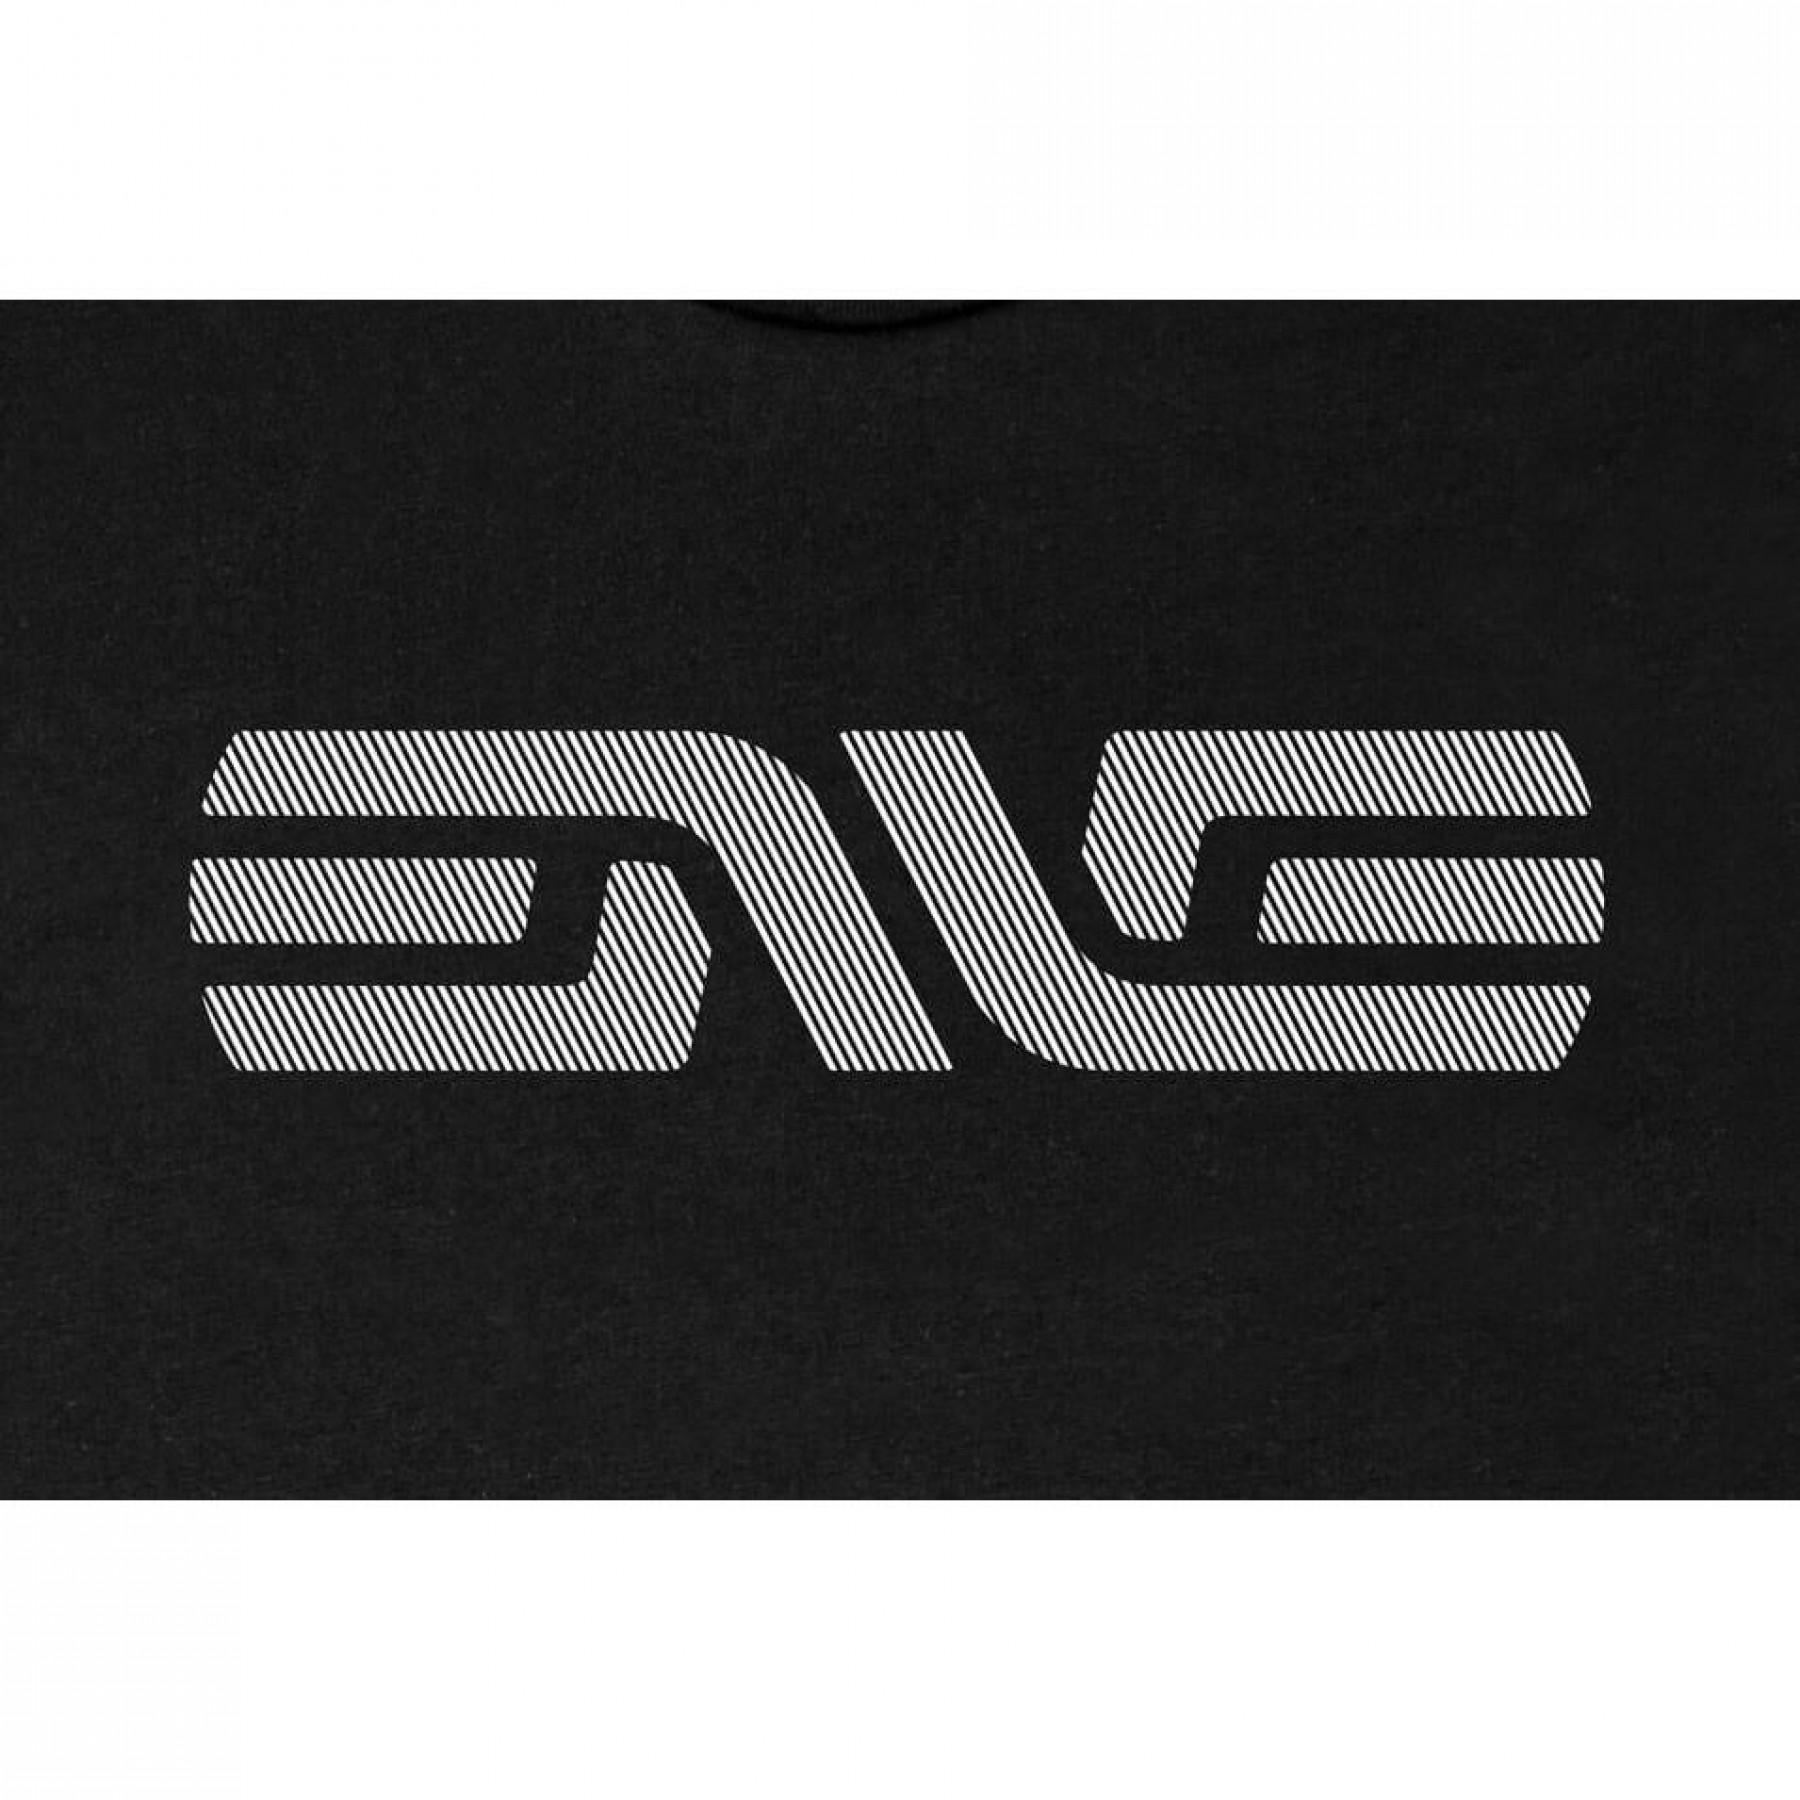 T-shirt Enve Logo